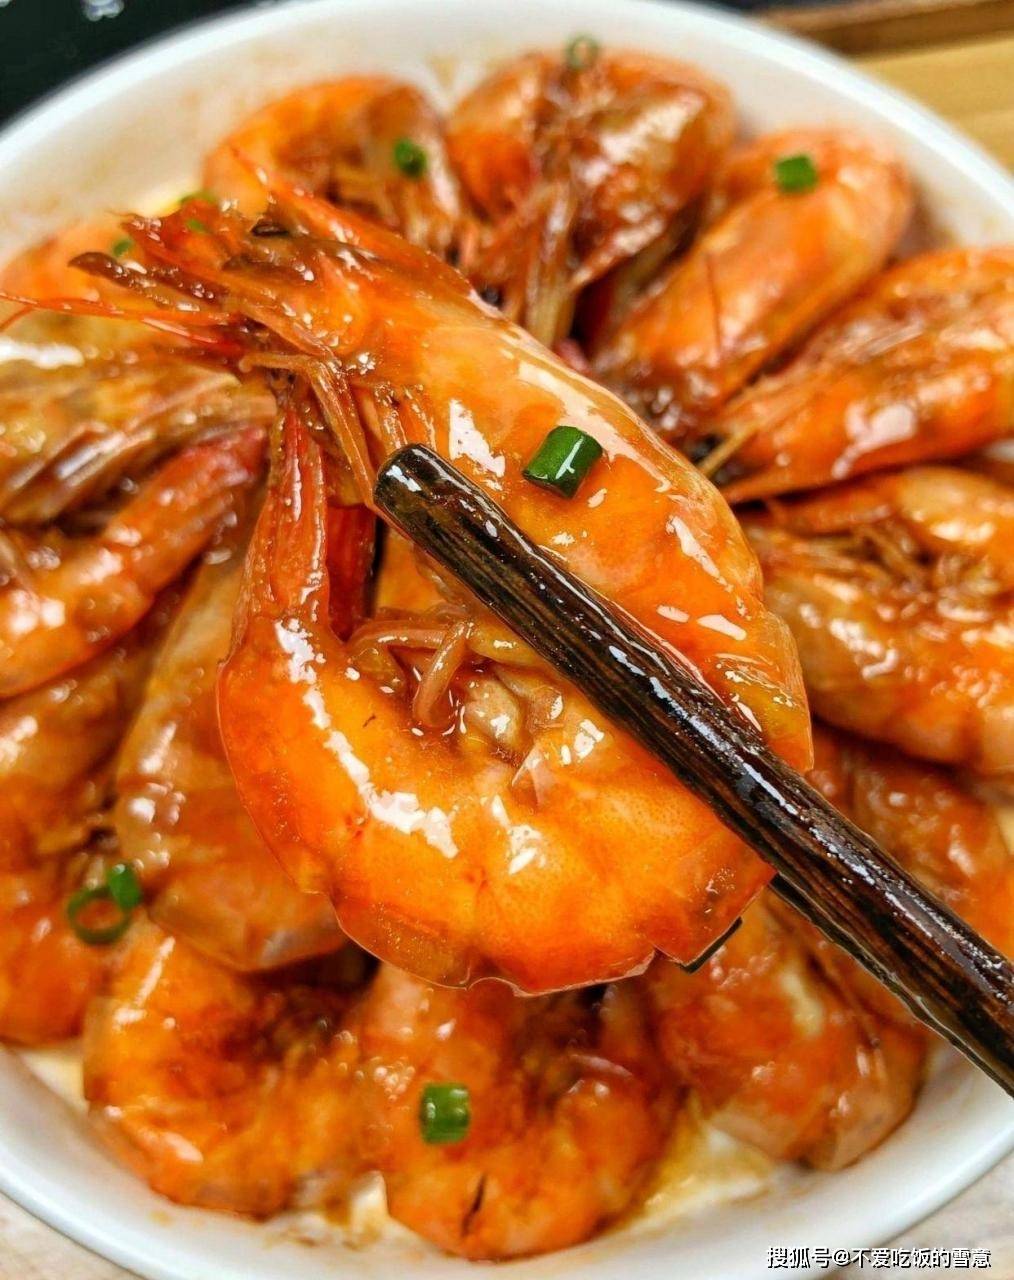 《油焖大虾:鲁菜经典,鲜美传承》